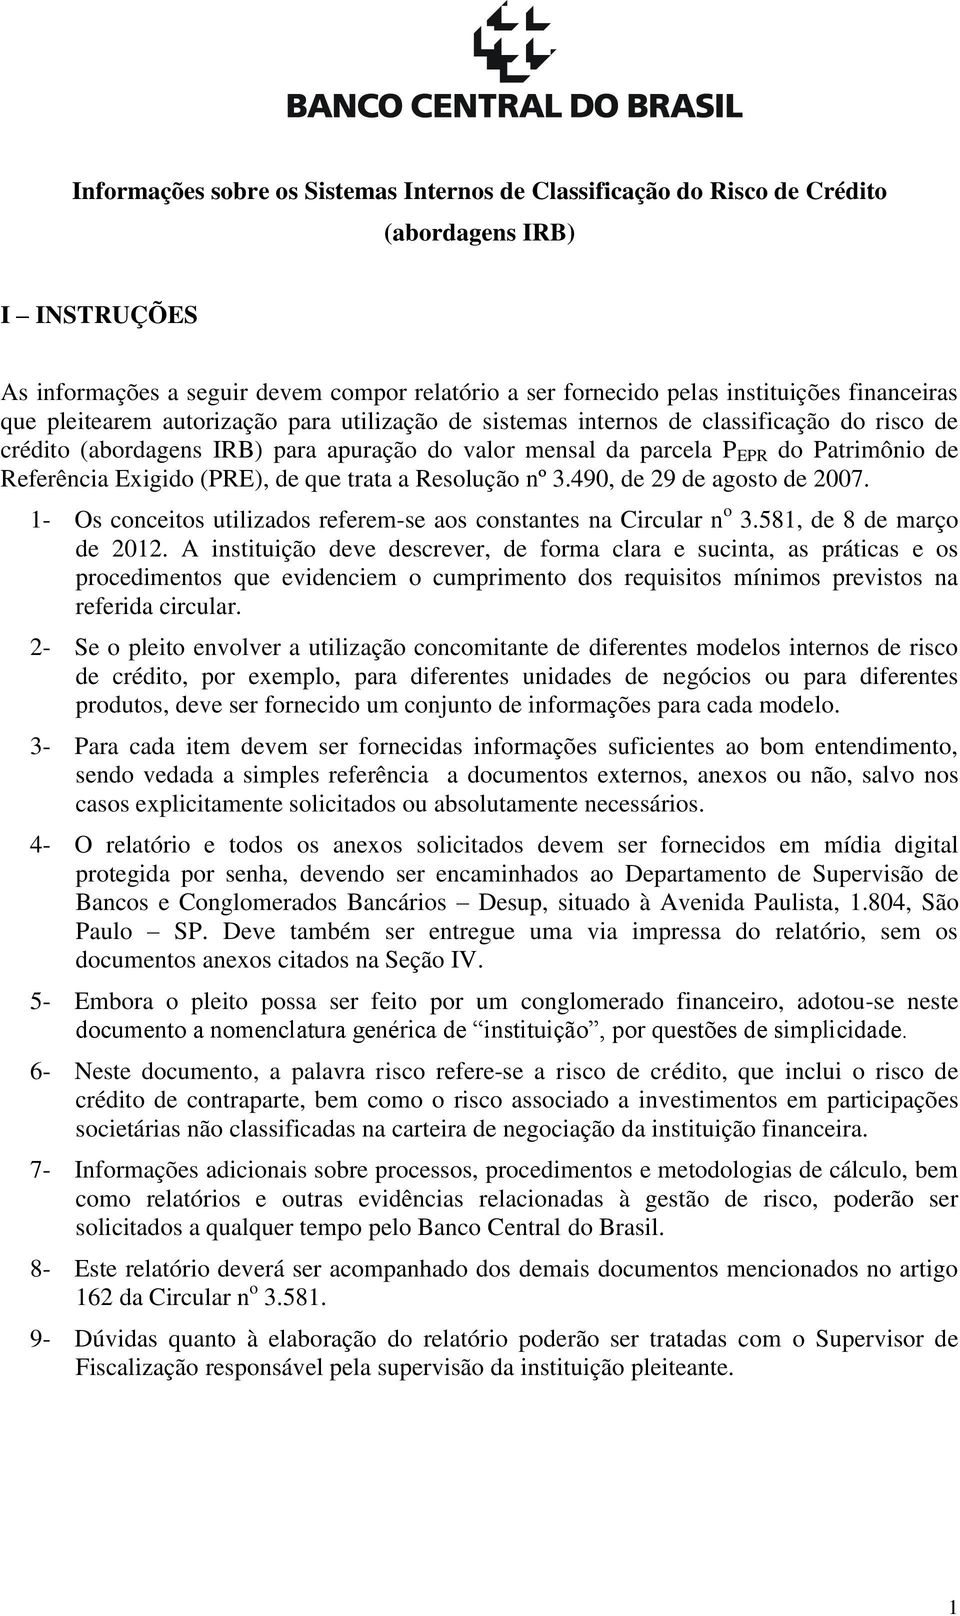 Exigido (PRE), de que trata a Resolução nº 3.490, de 29 de agosto de 2007. 1- Os conceitos utilizados referem-se aos constantes na Circular n o 3.581, de 8 de março de 2012.